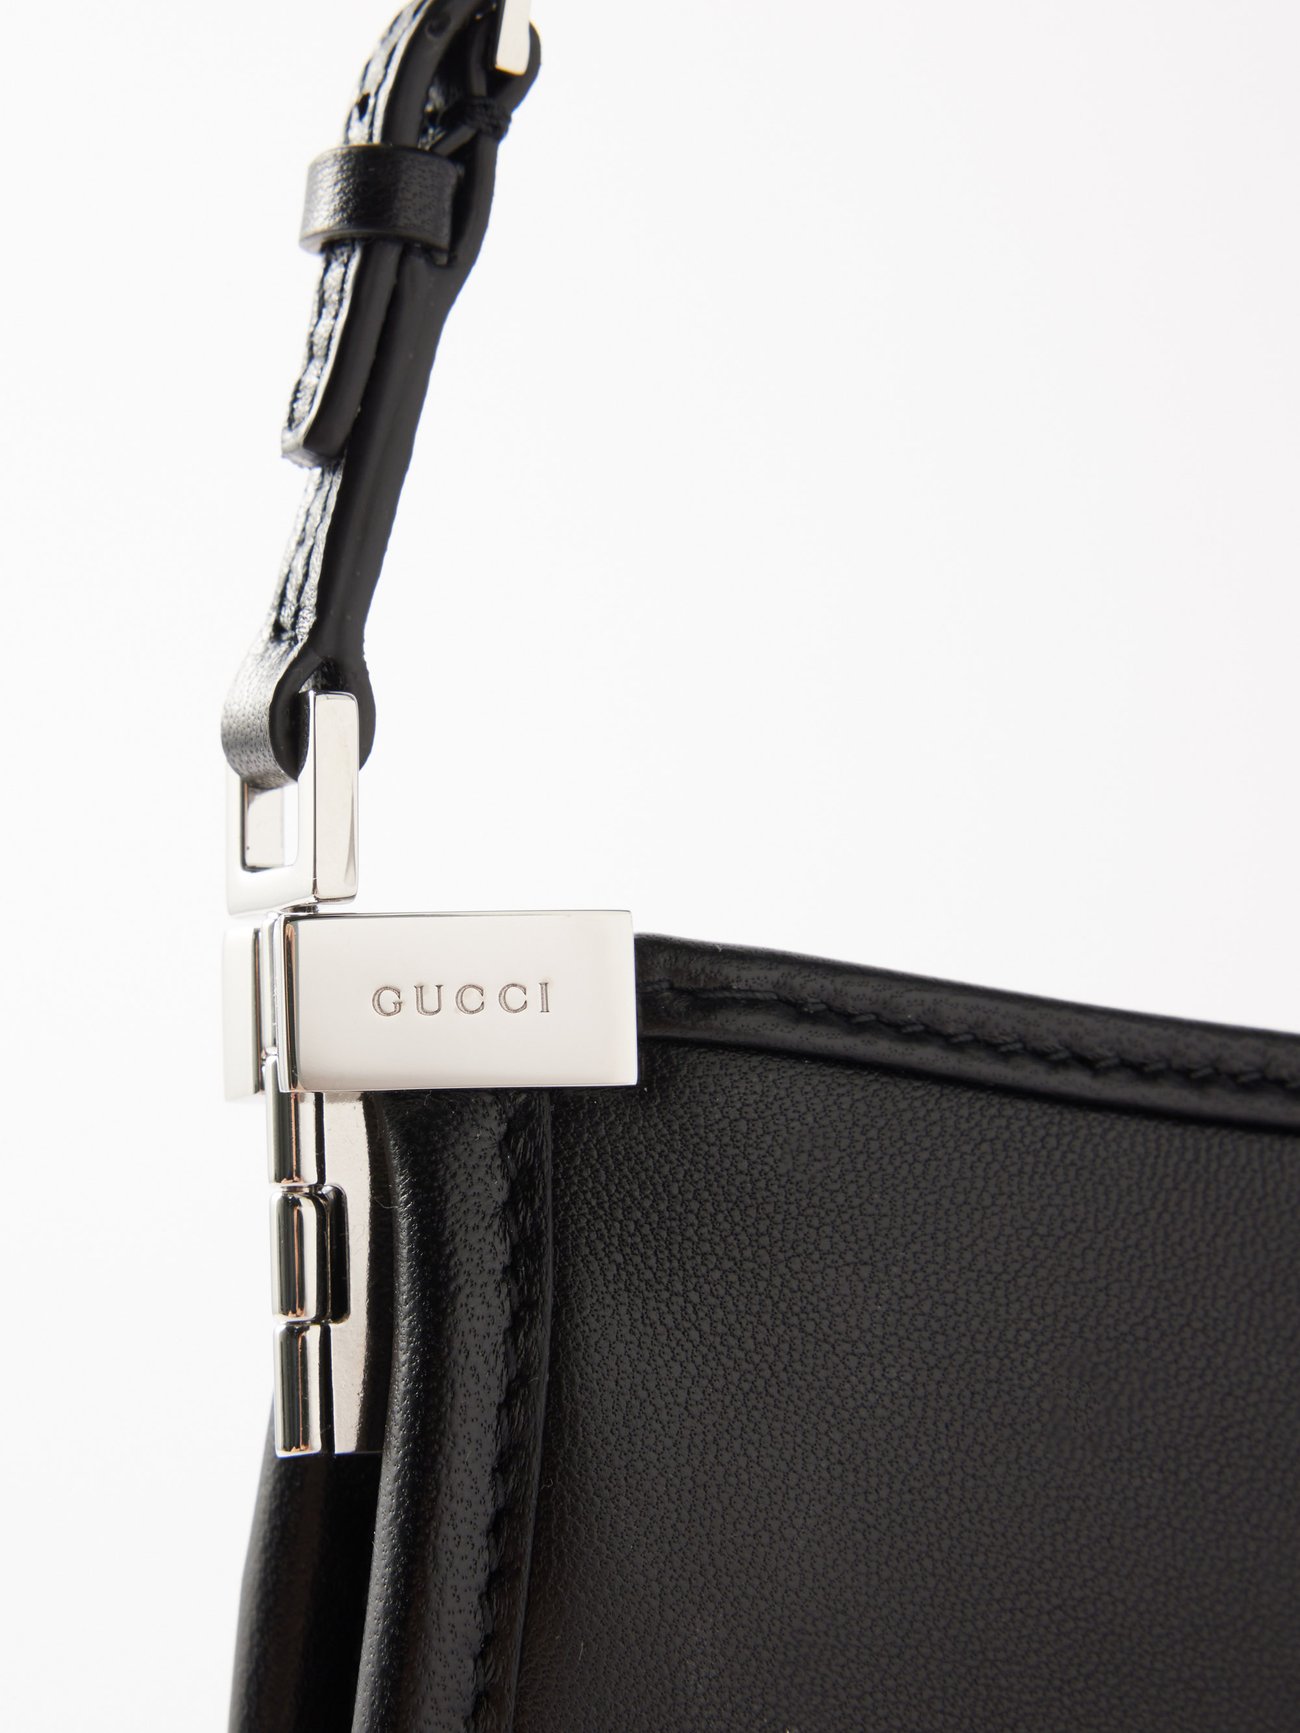 Gucci Horsebit Slim Small Shoulder Bag